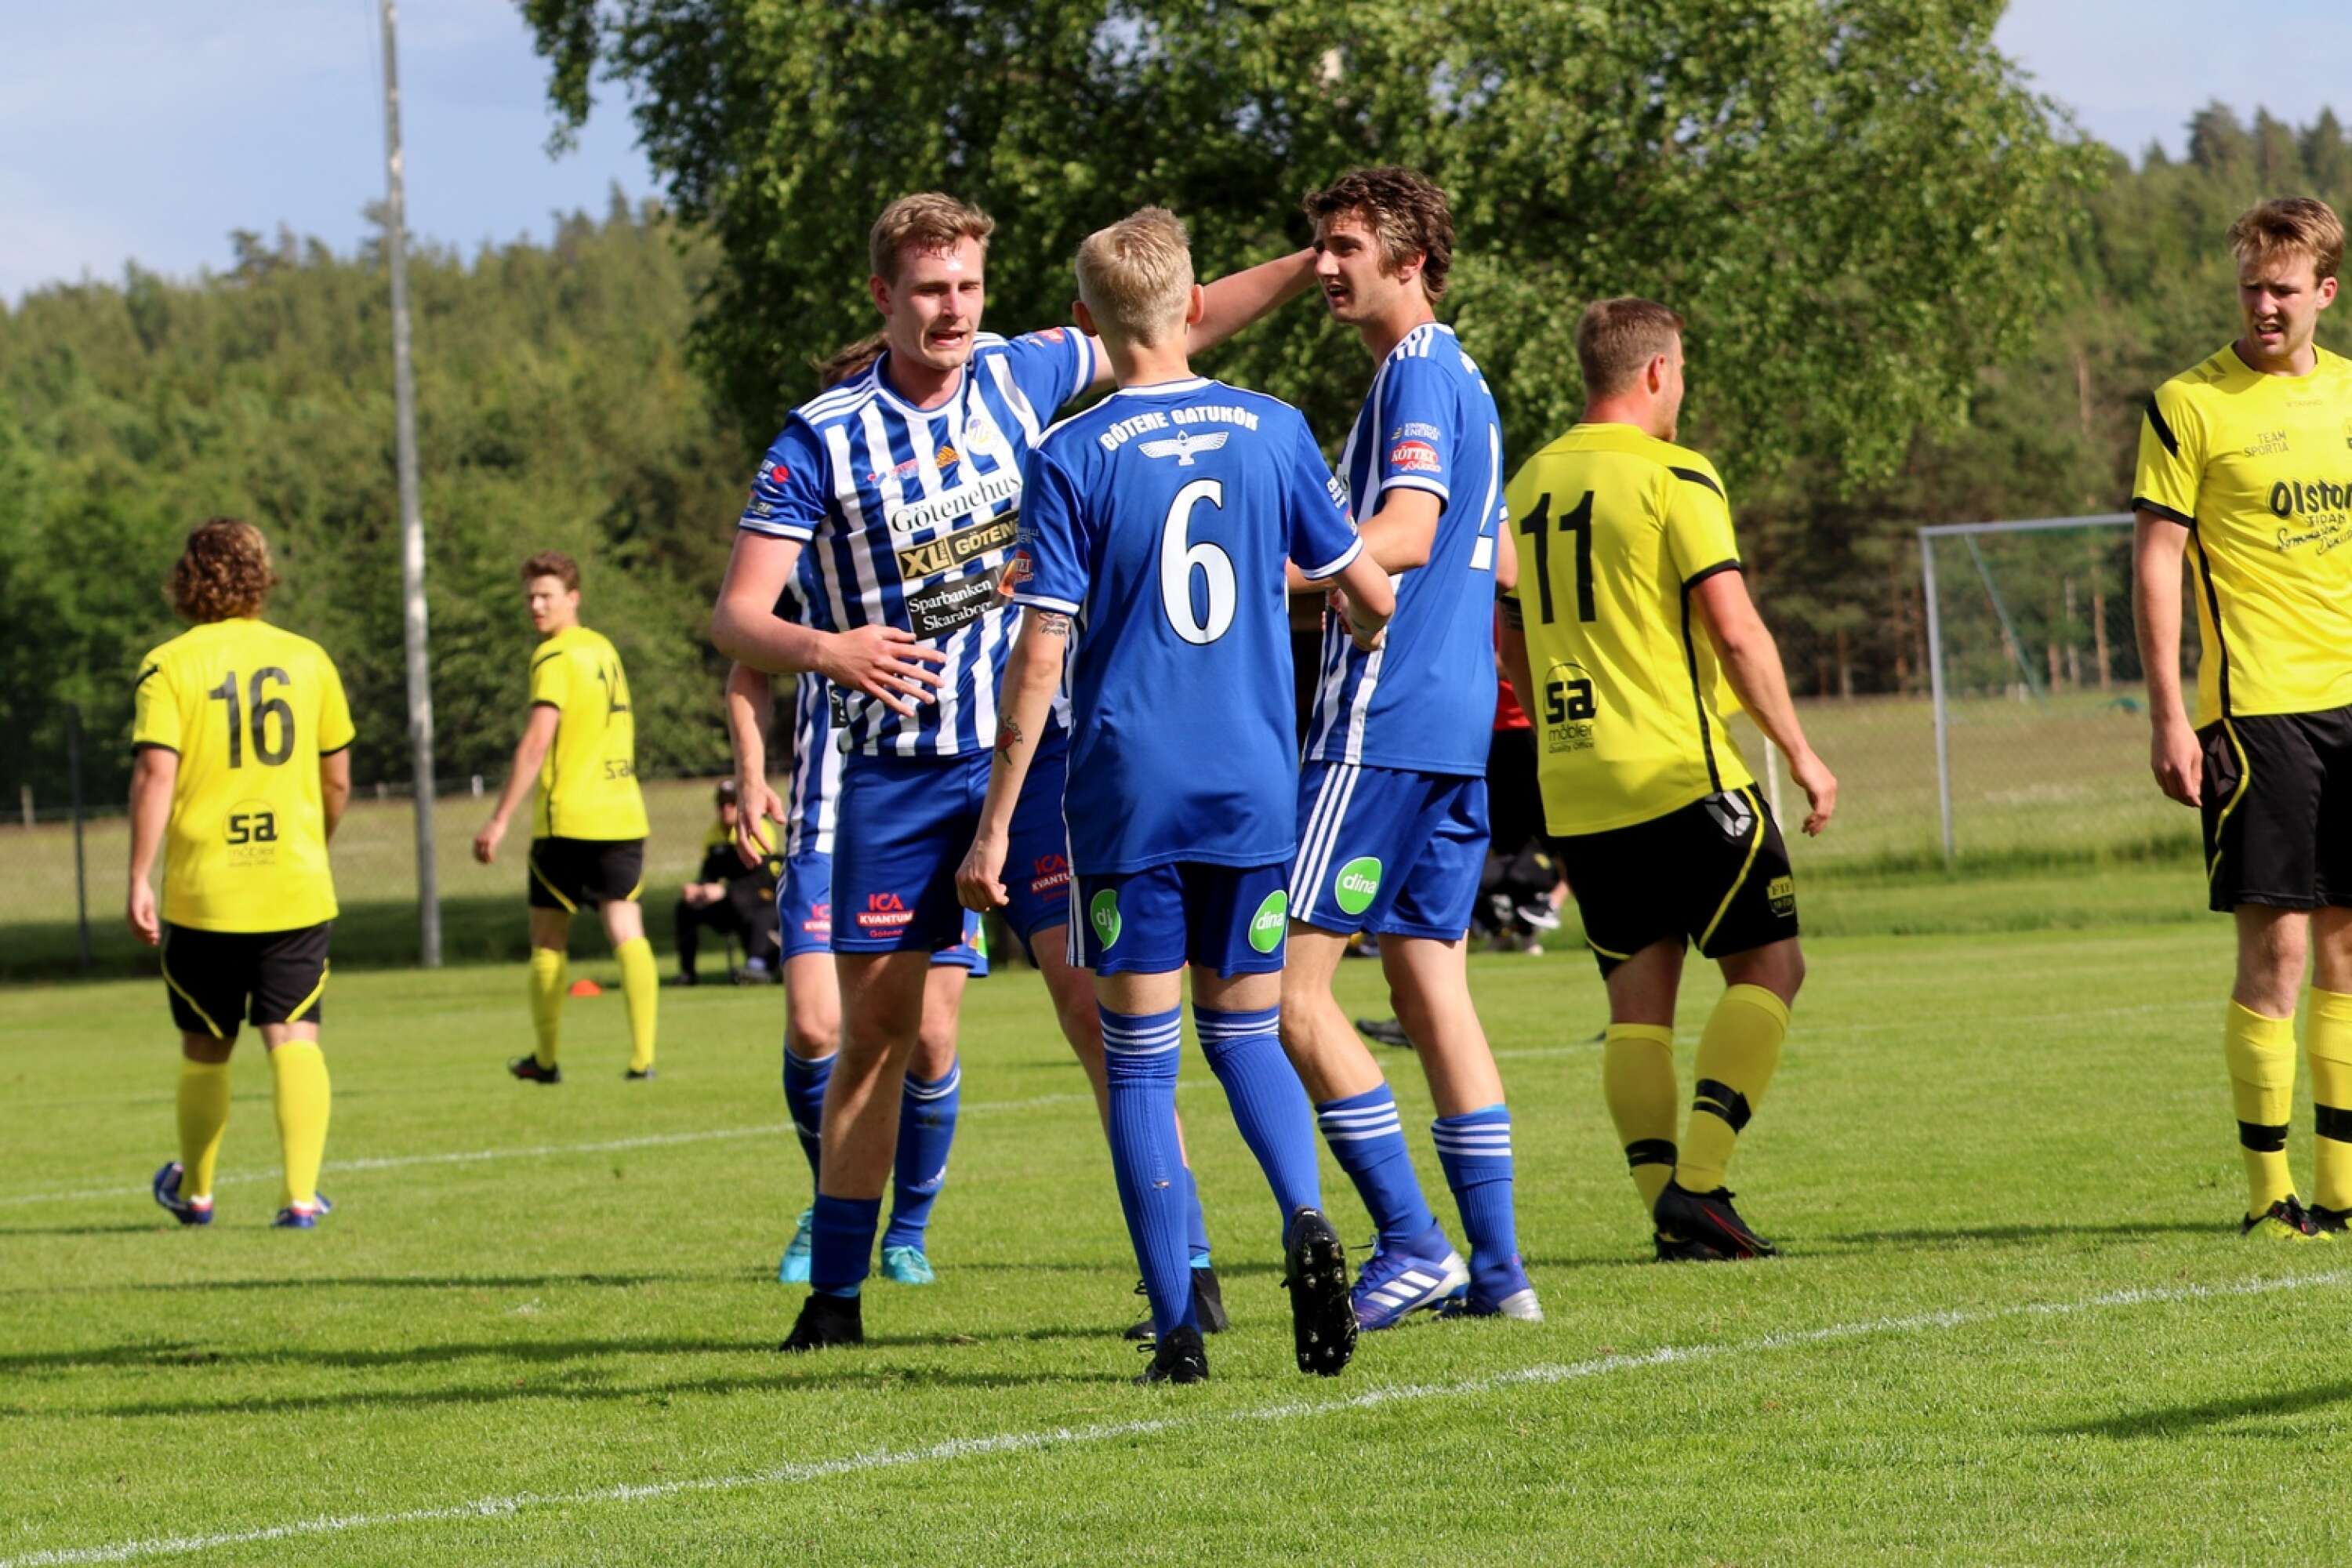 IFK Kommer att möta Götene IF i en träningsmatch den 2:a augusti. Götene har gått bra i division fyra och ligger först i tabellen. (ARKIV)